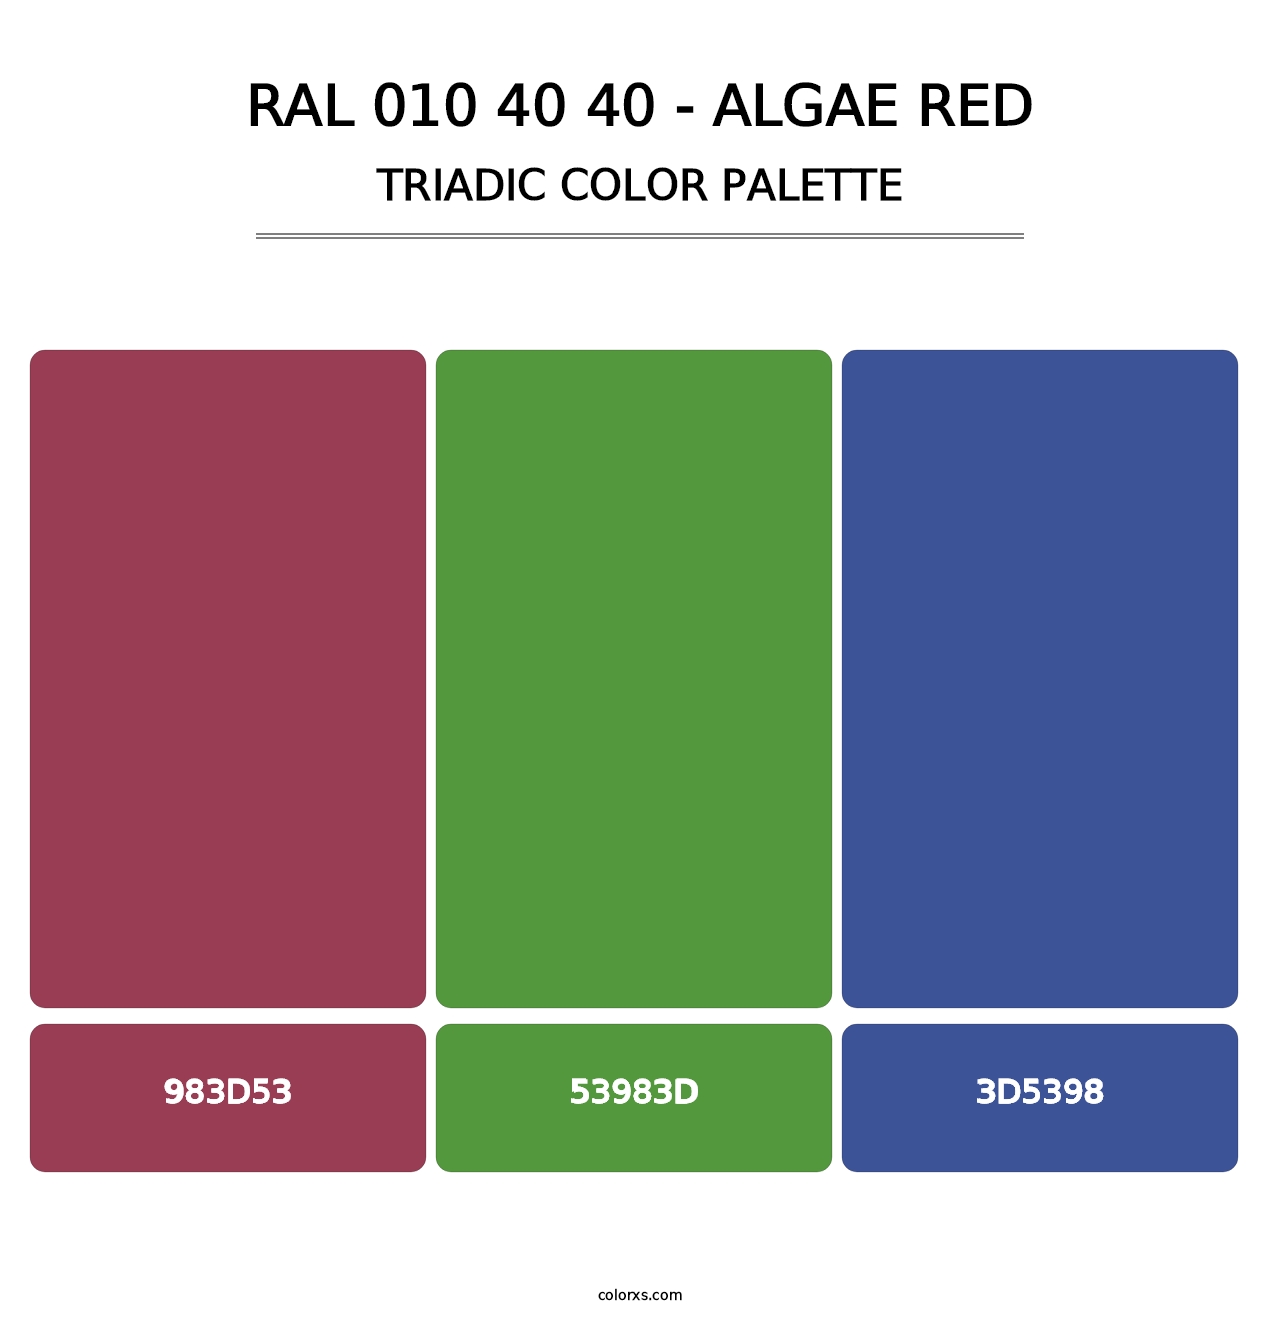 RAL 010 40 40 - Algae Red - Triadic Color Palette